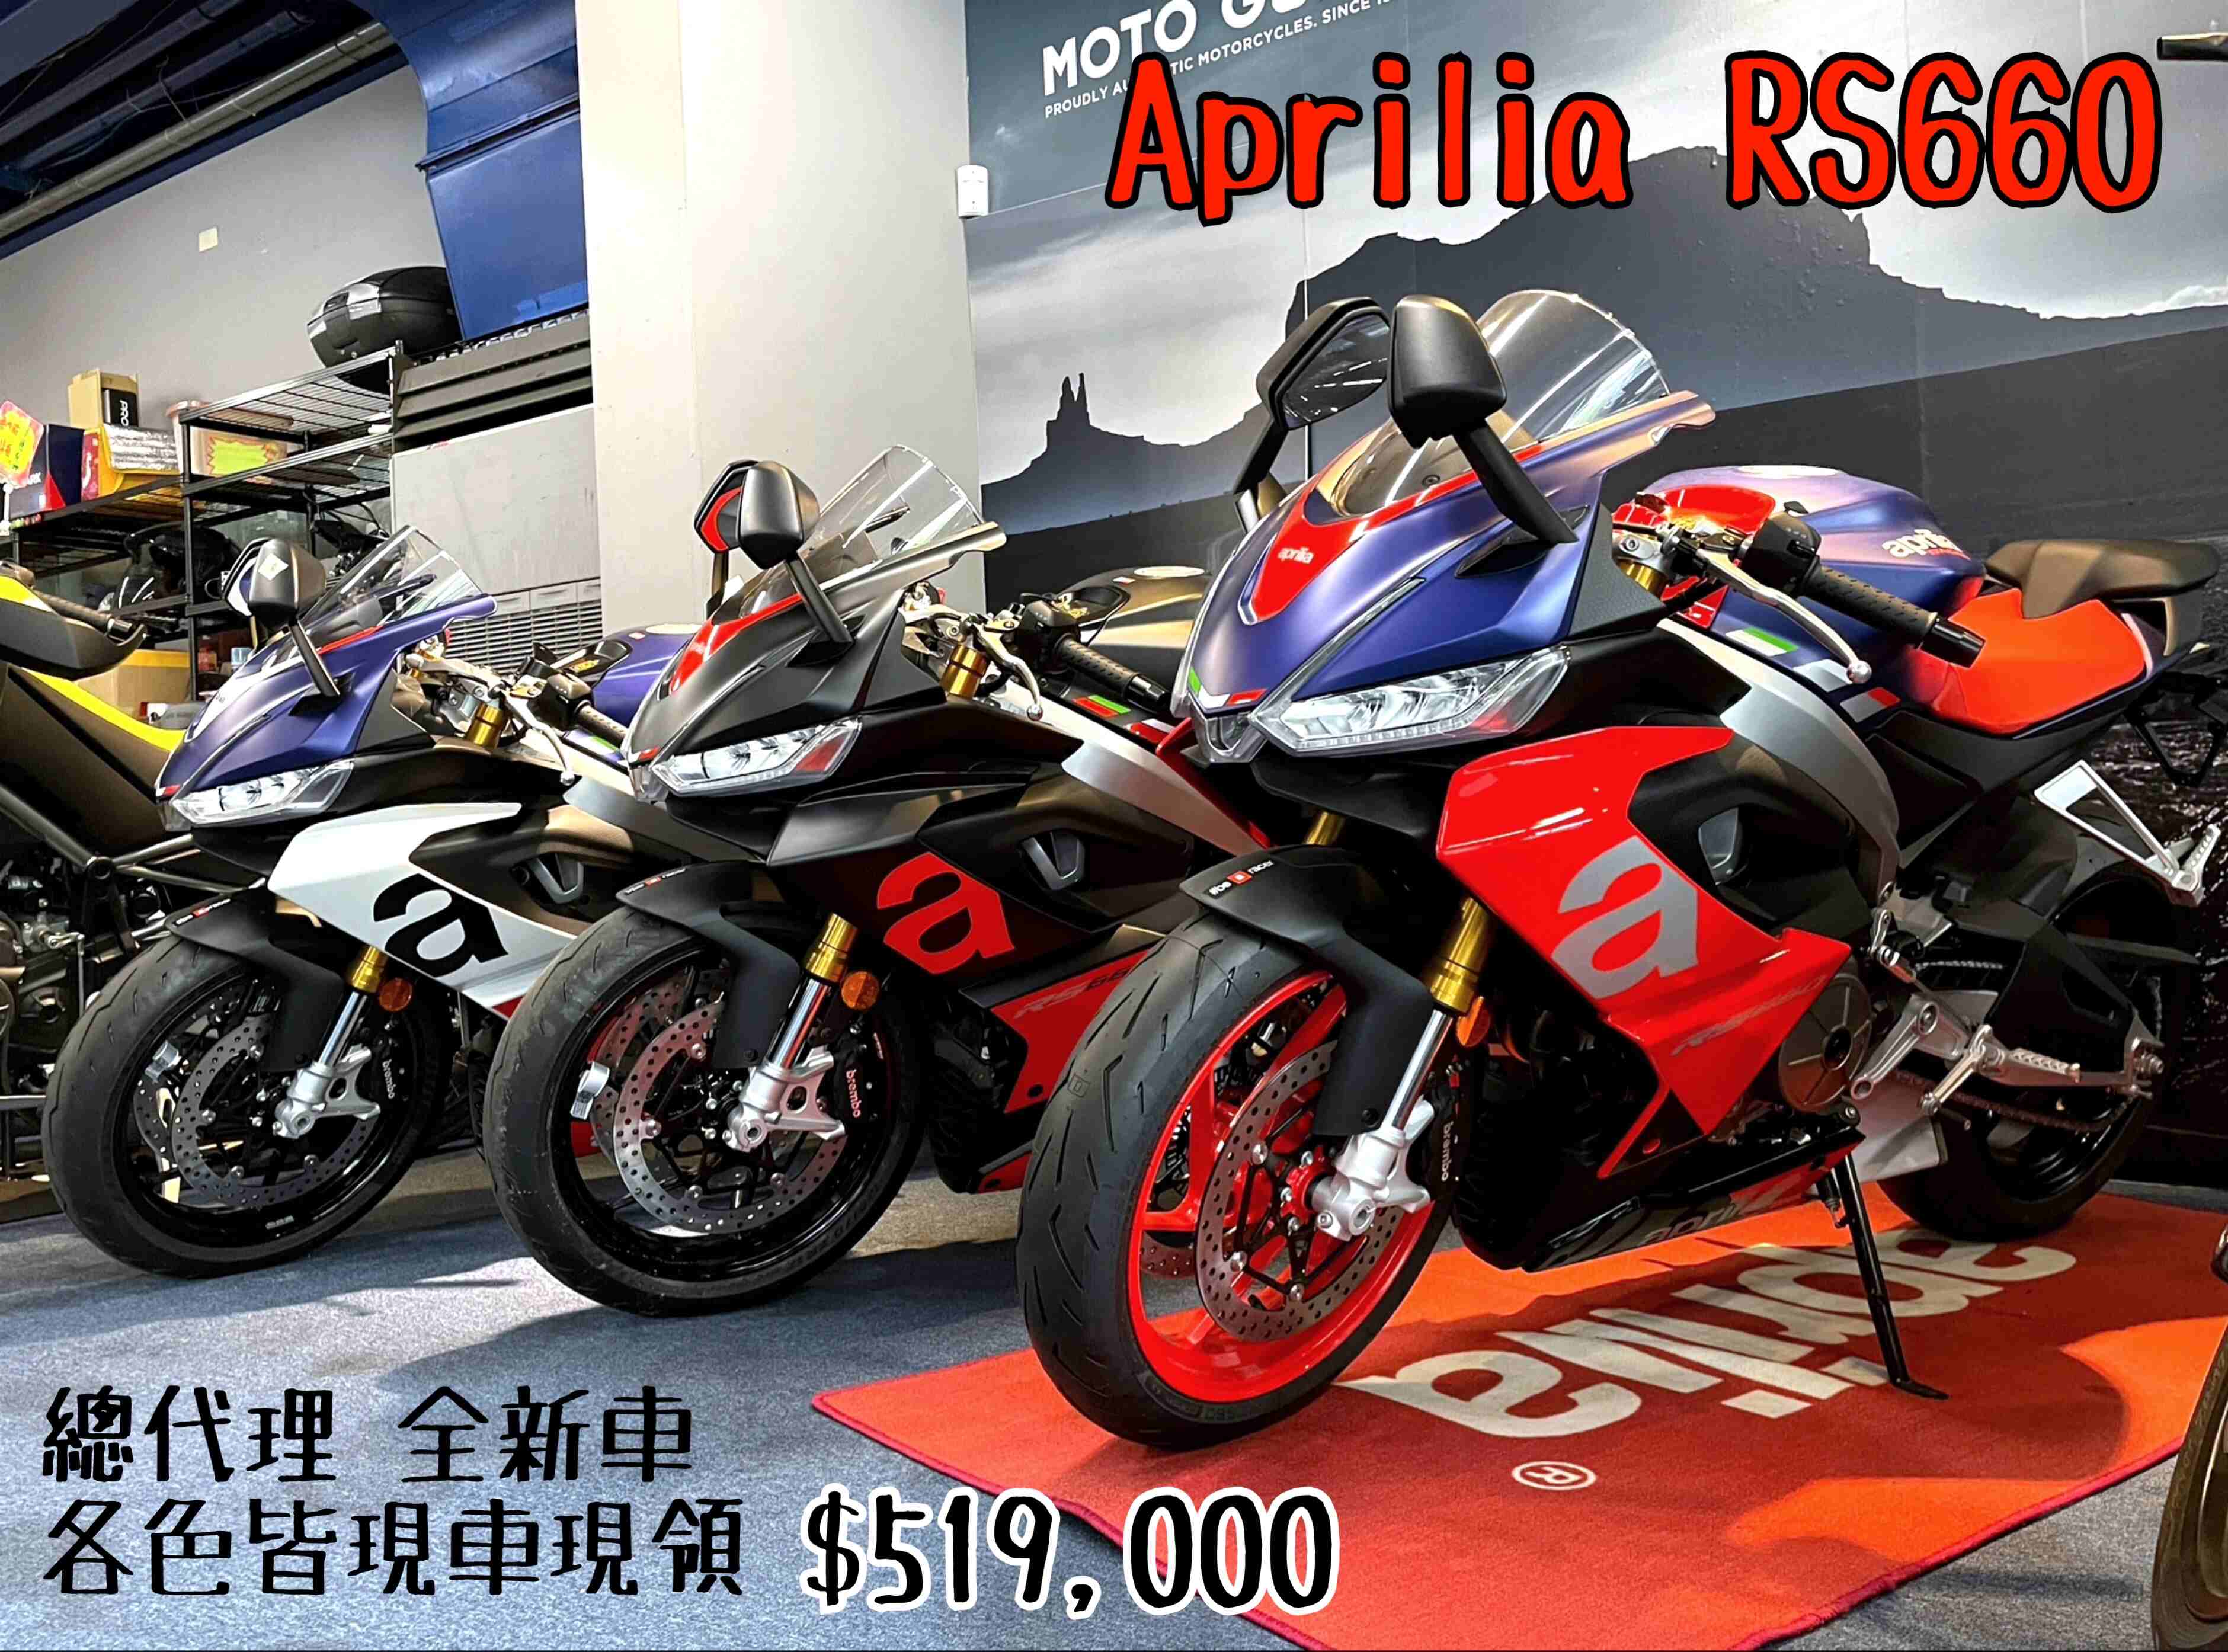 【原夢輕重機】APRILIA RS 660 - 「Webike-摩托車市」  APRILIA RS660三色現車現領！ ＄51.9萬 全新總代理車